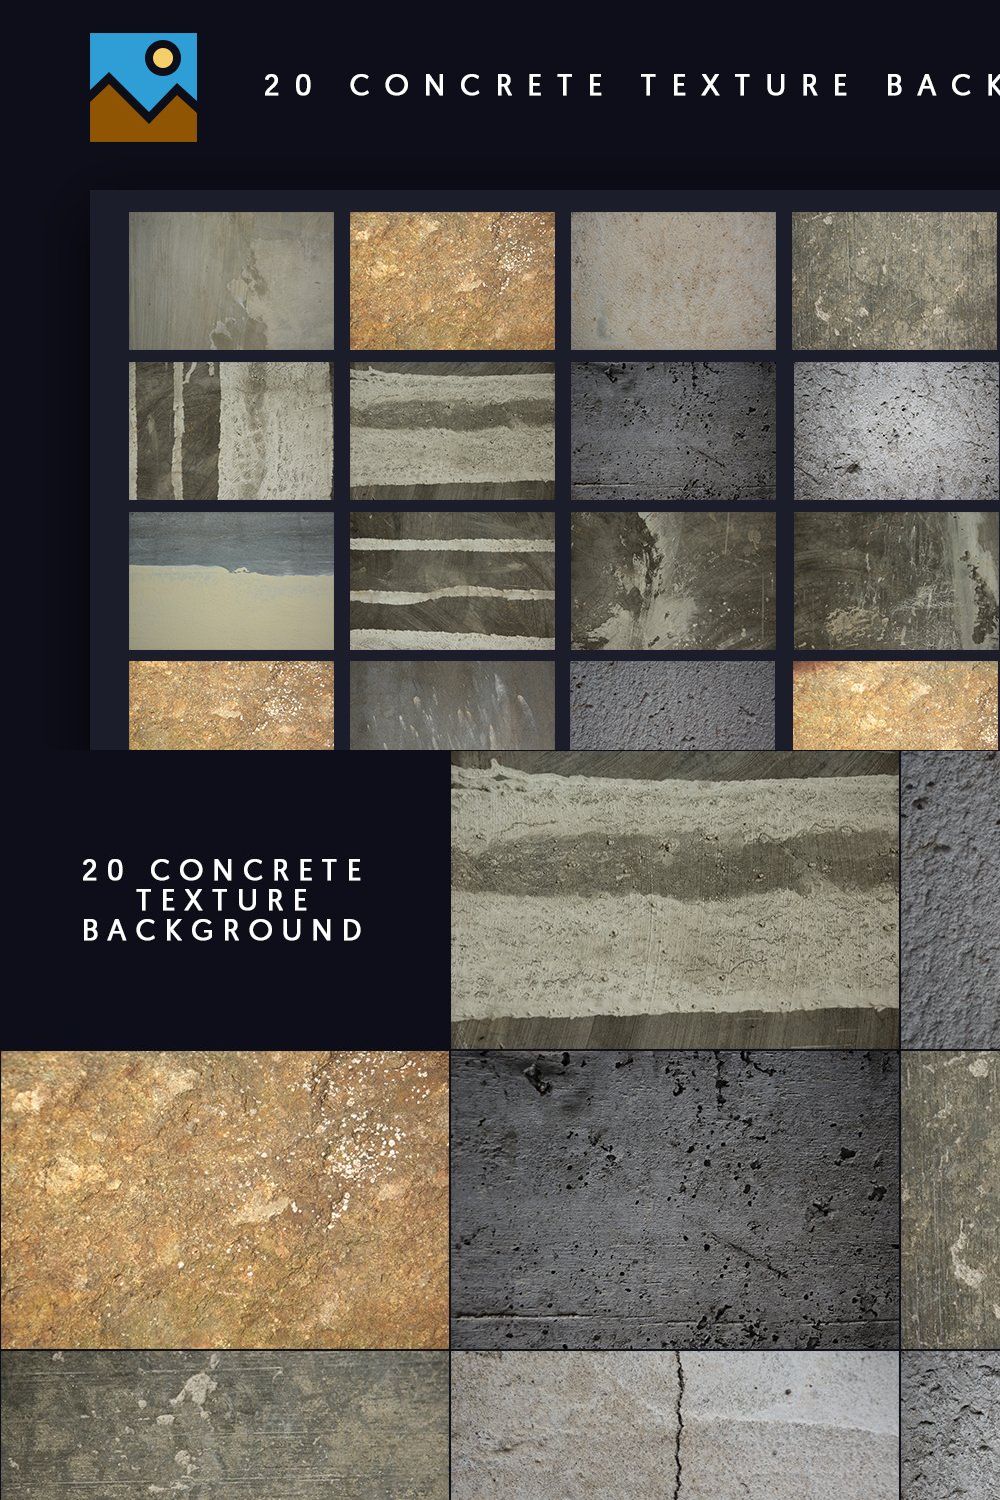 20 Concrete Texture Background pinterest preview image.